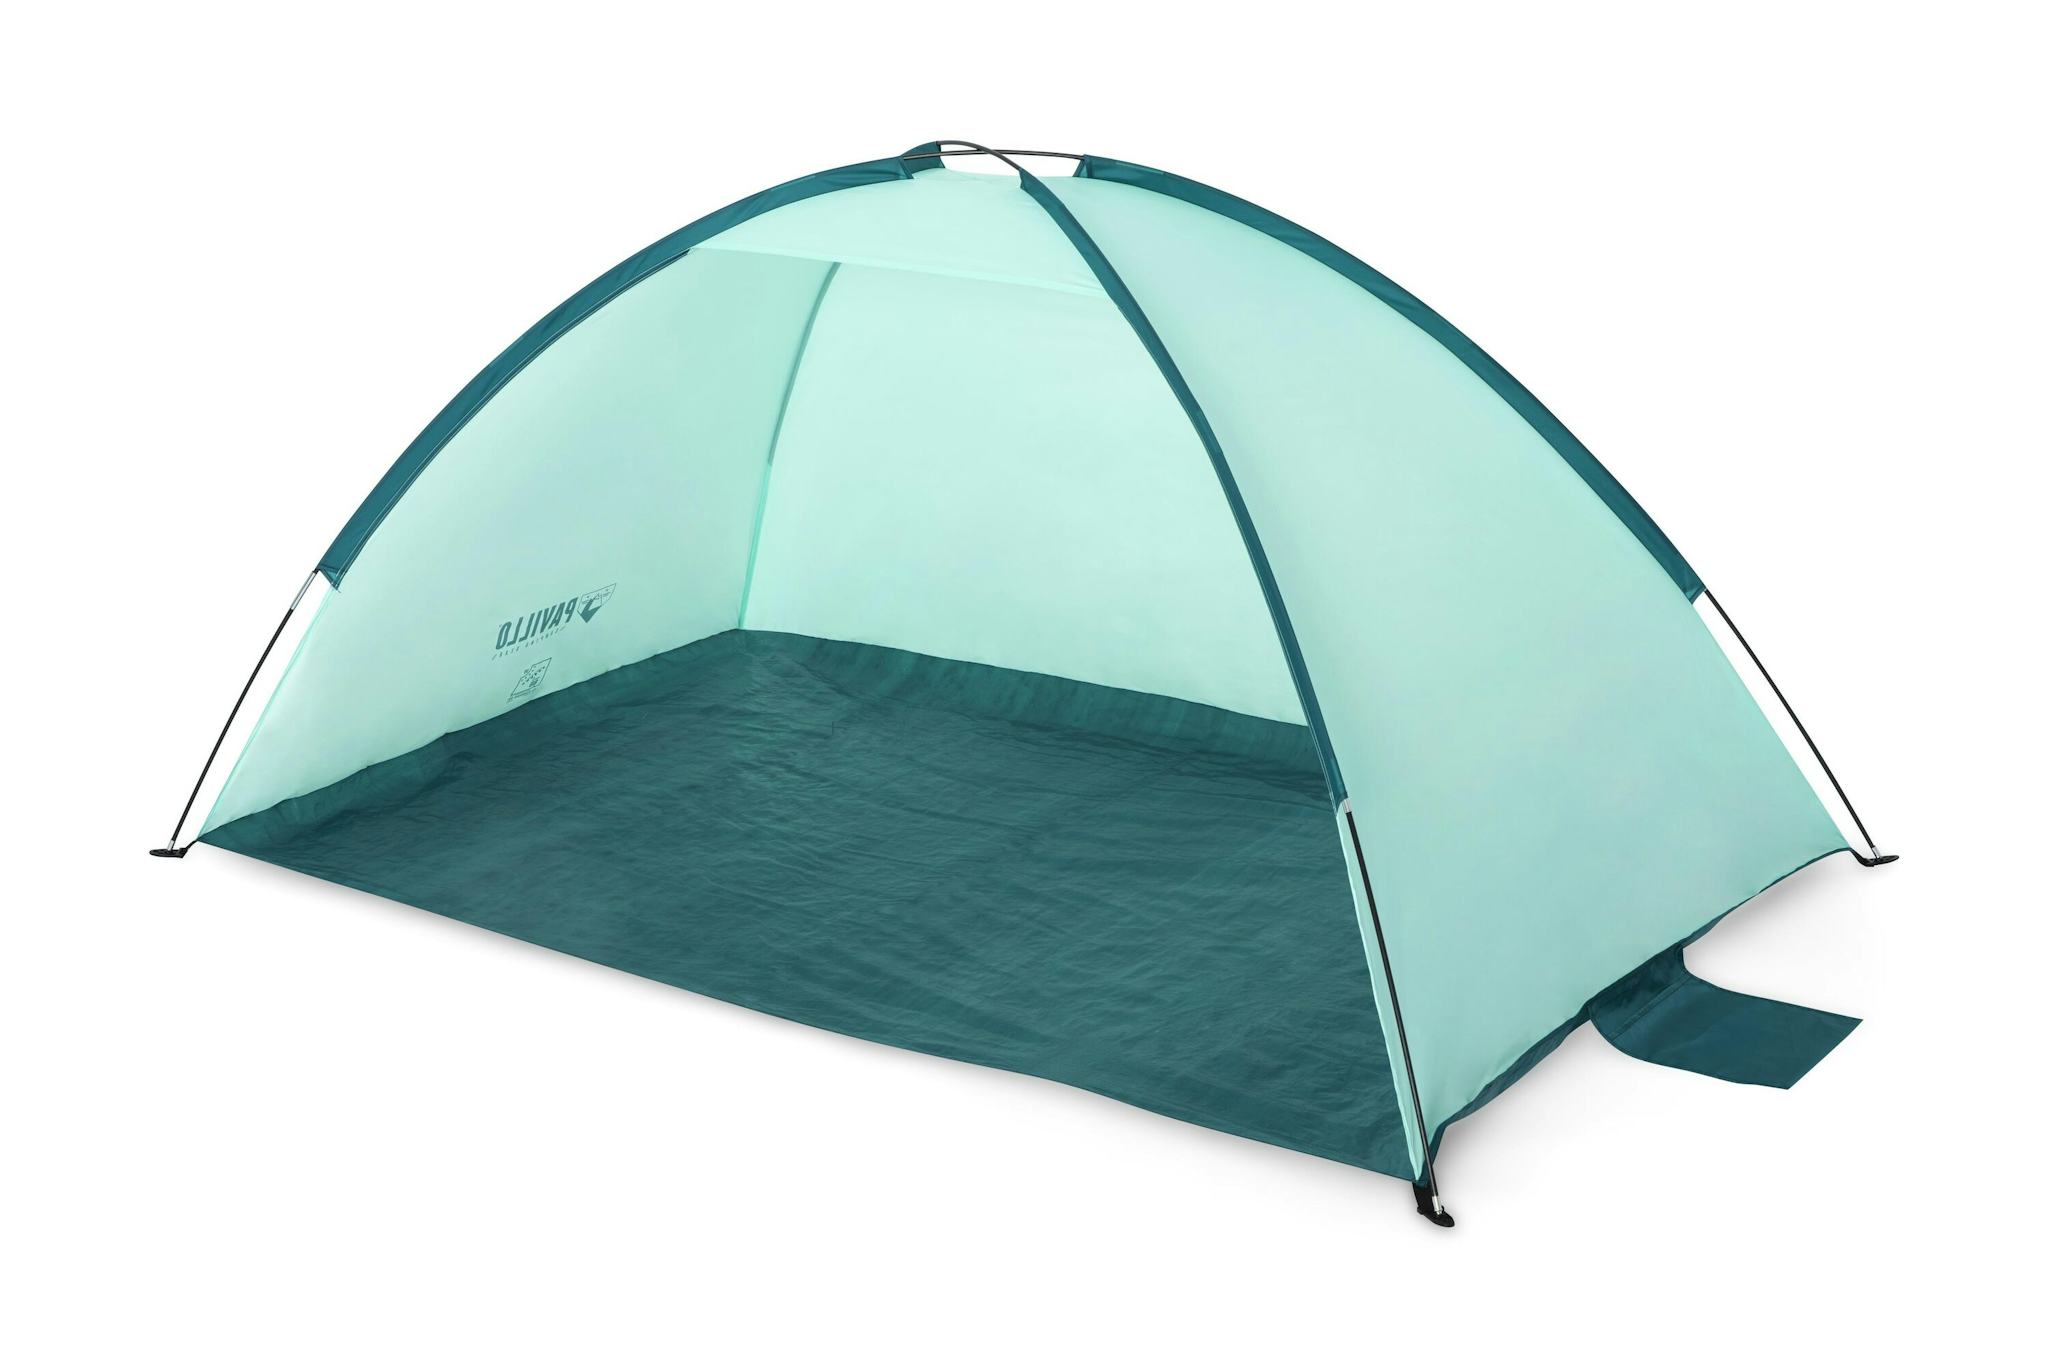 Camping Tente de plage pop-up Bestway™ Quick 2 places 200 x 120 x 90 cm Bestway 4